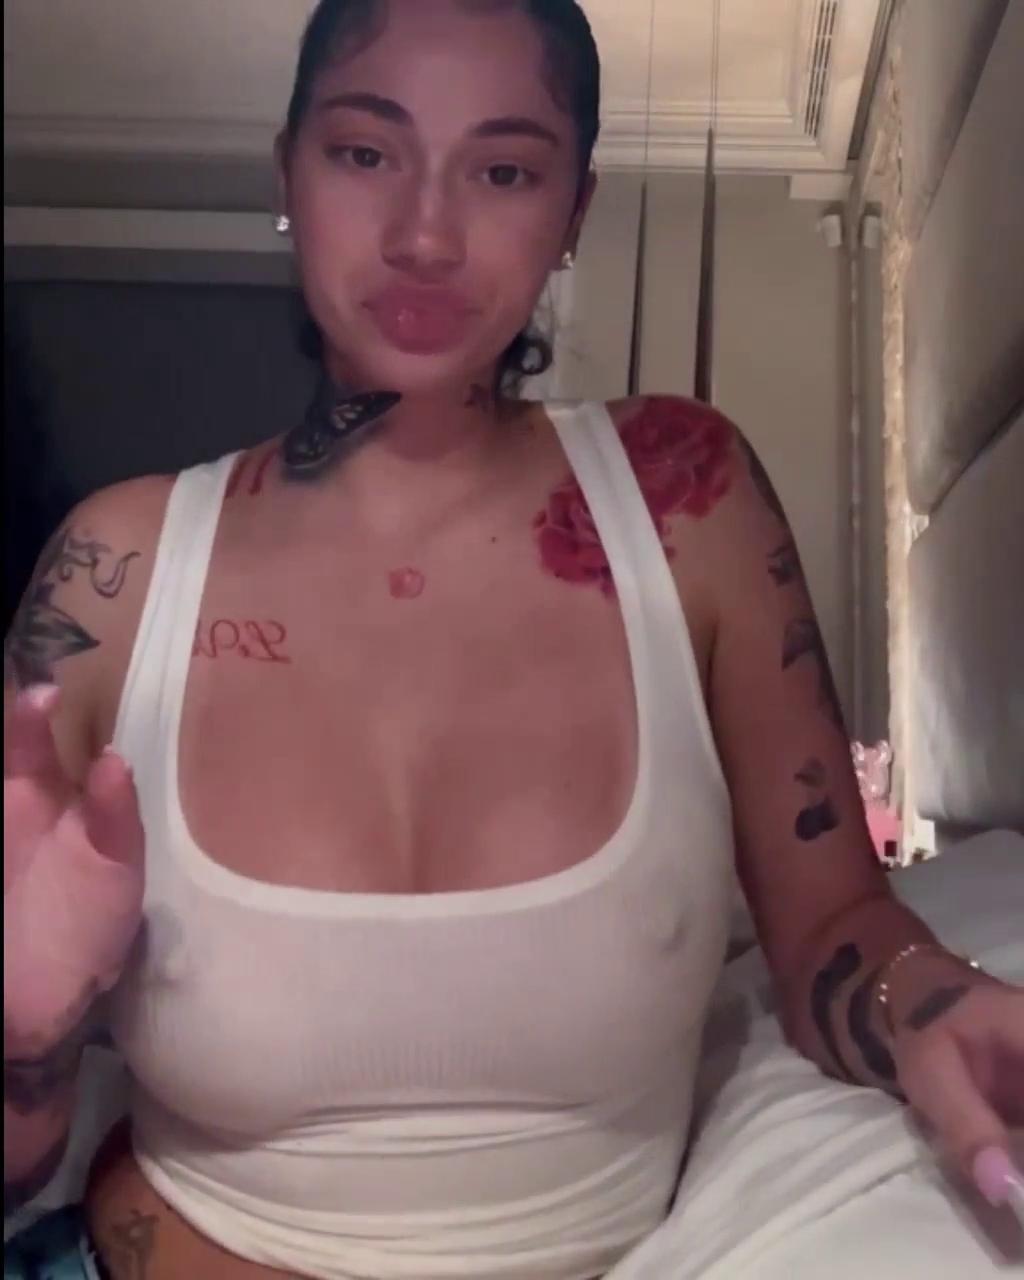 bhad bhabie sexy nipple pokies top snapchat video leaked pnpdvh 1